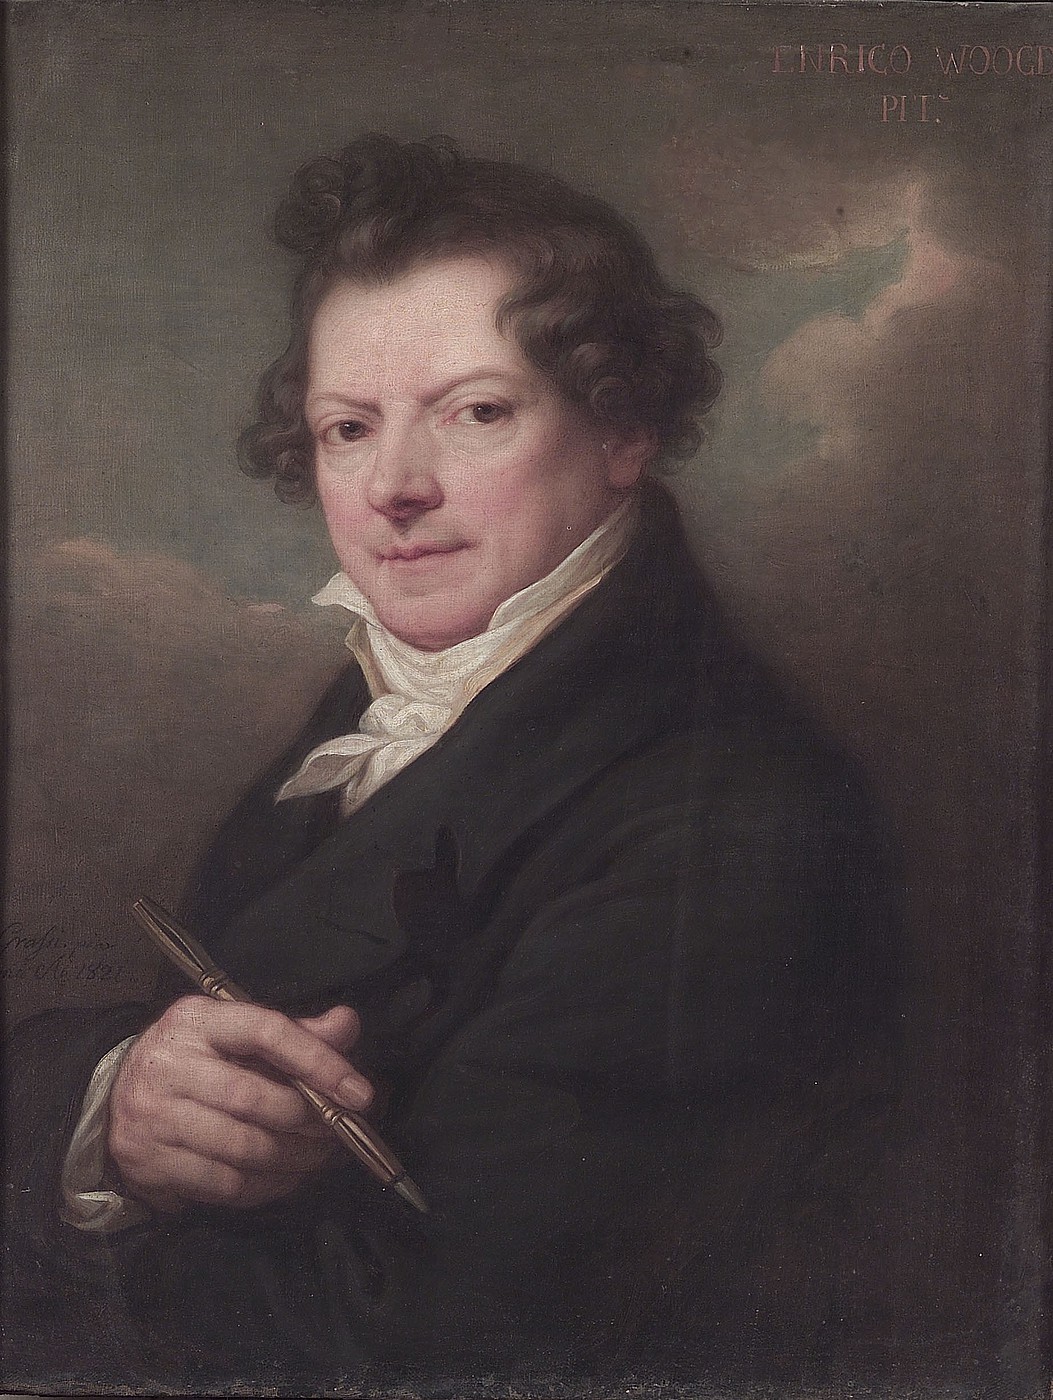 Giuseppe Grassi: Hendrick Voogd, 1821